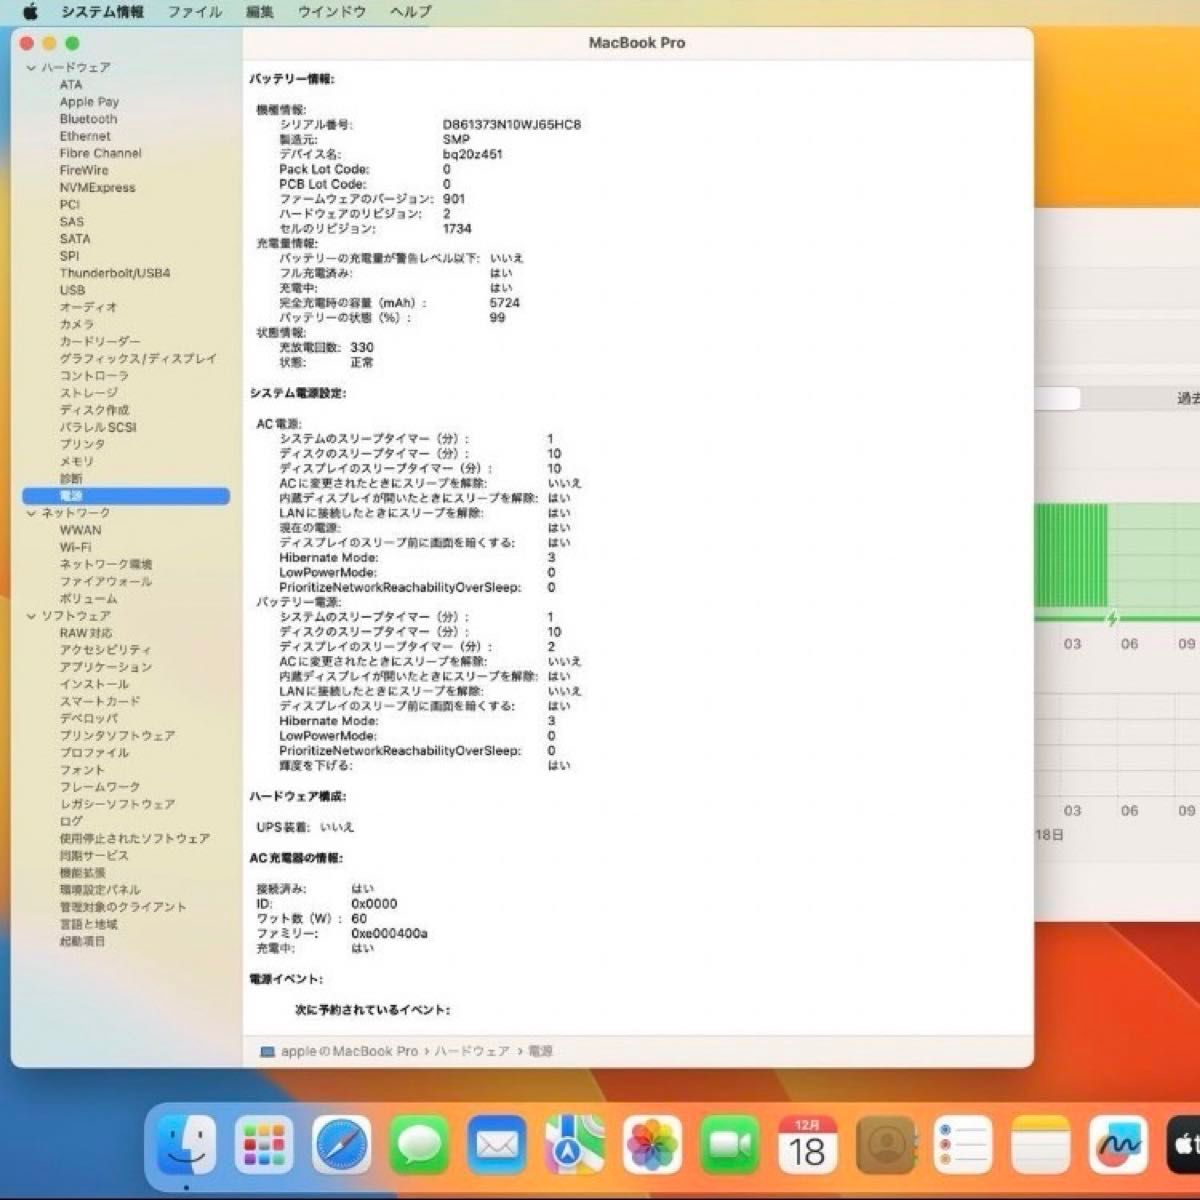 MacBook Pro2019 【15インチ】 SpaceGray 完動品格安★送料込み